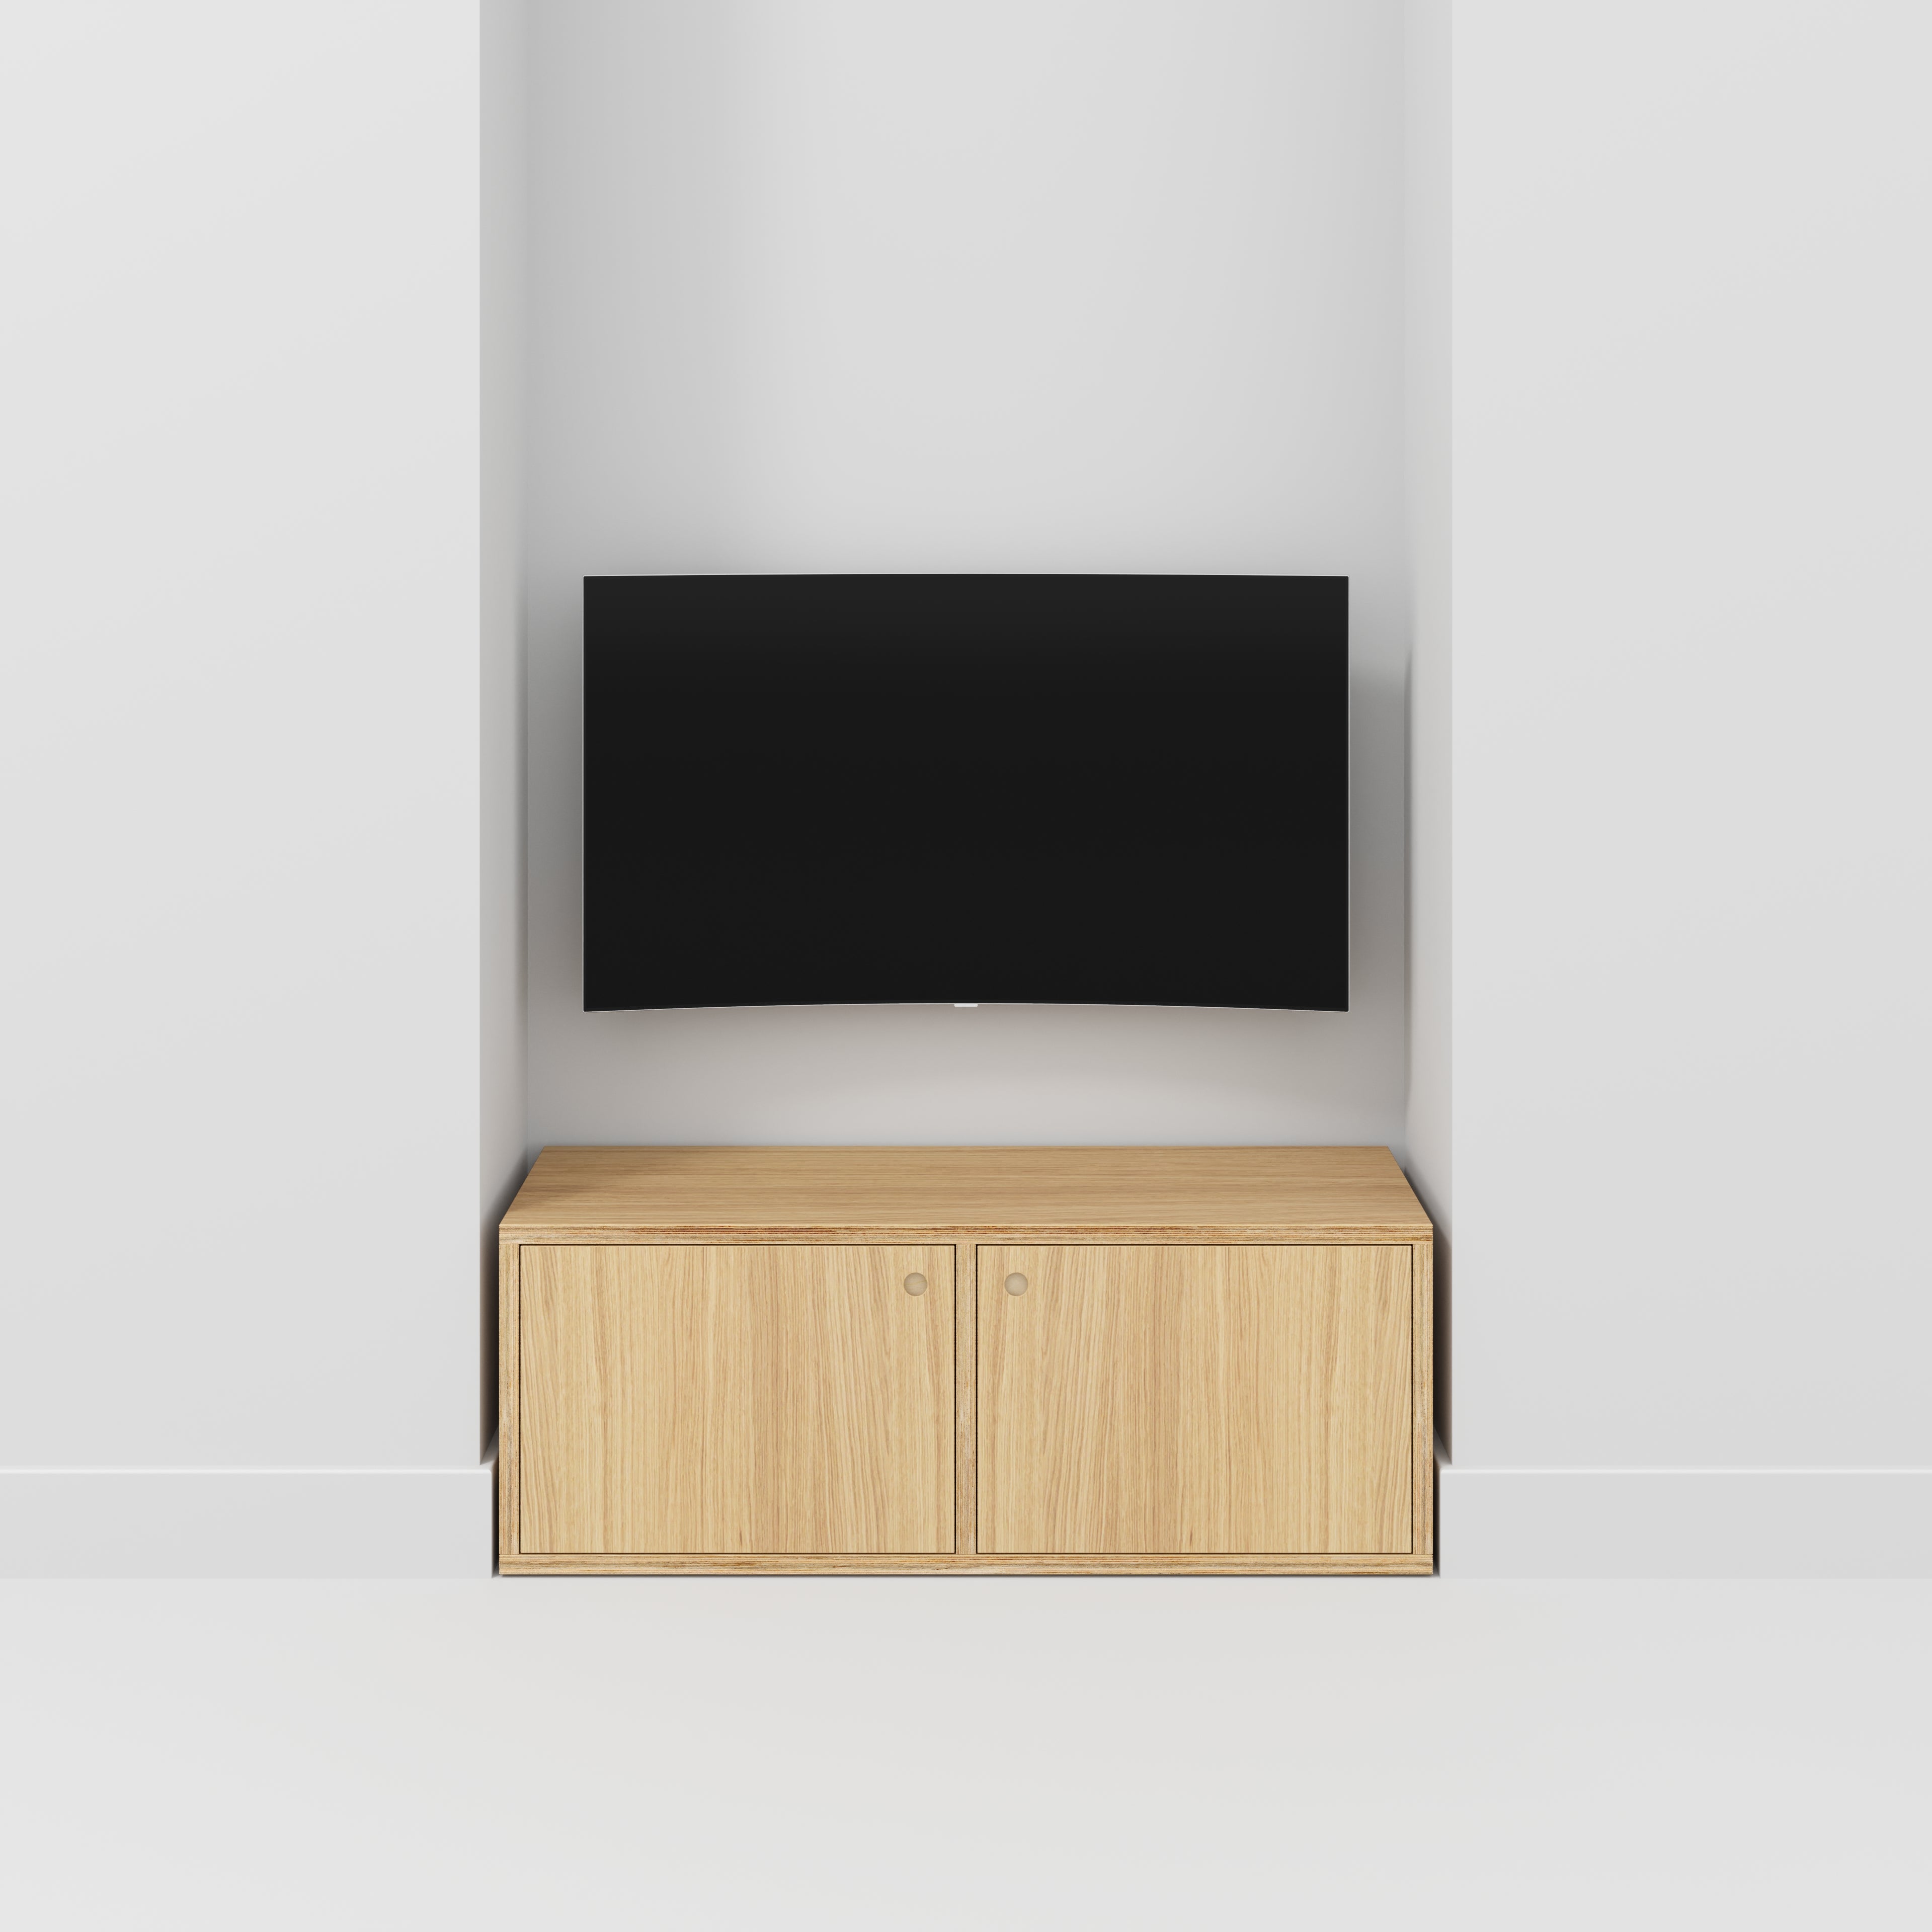 Storage with Doors - Plywood Oak - 1200(w) x 400(d) x 450(h)